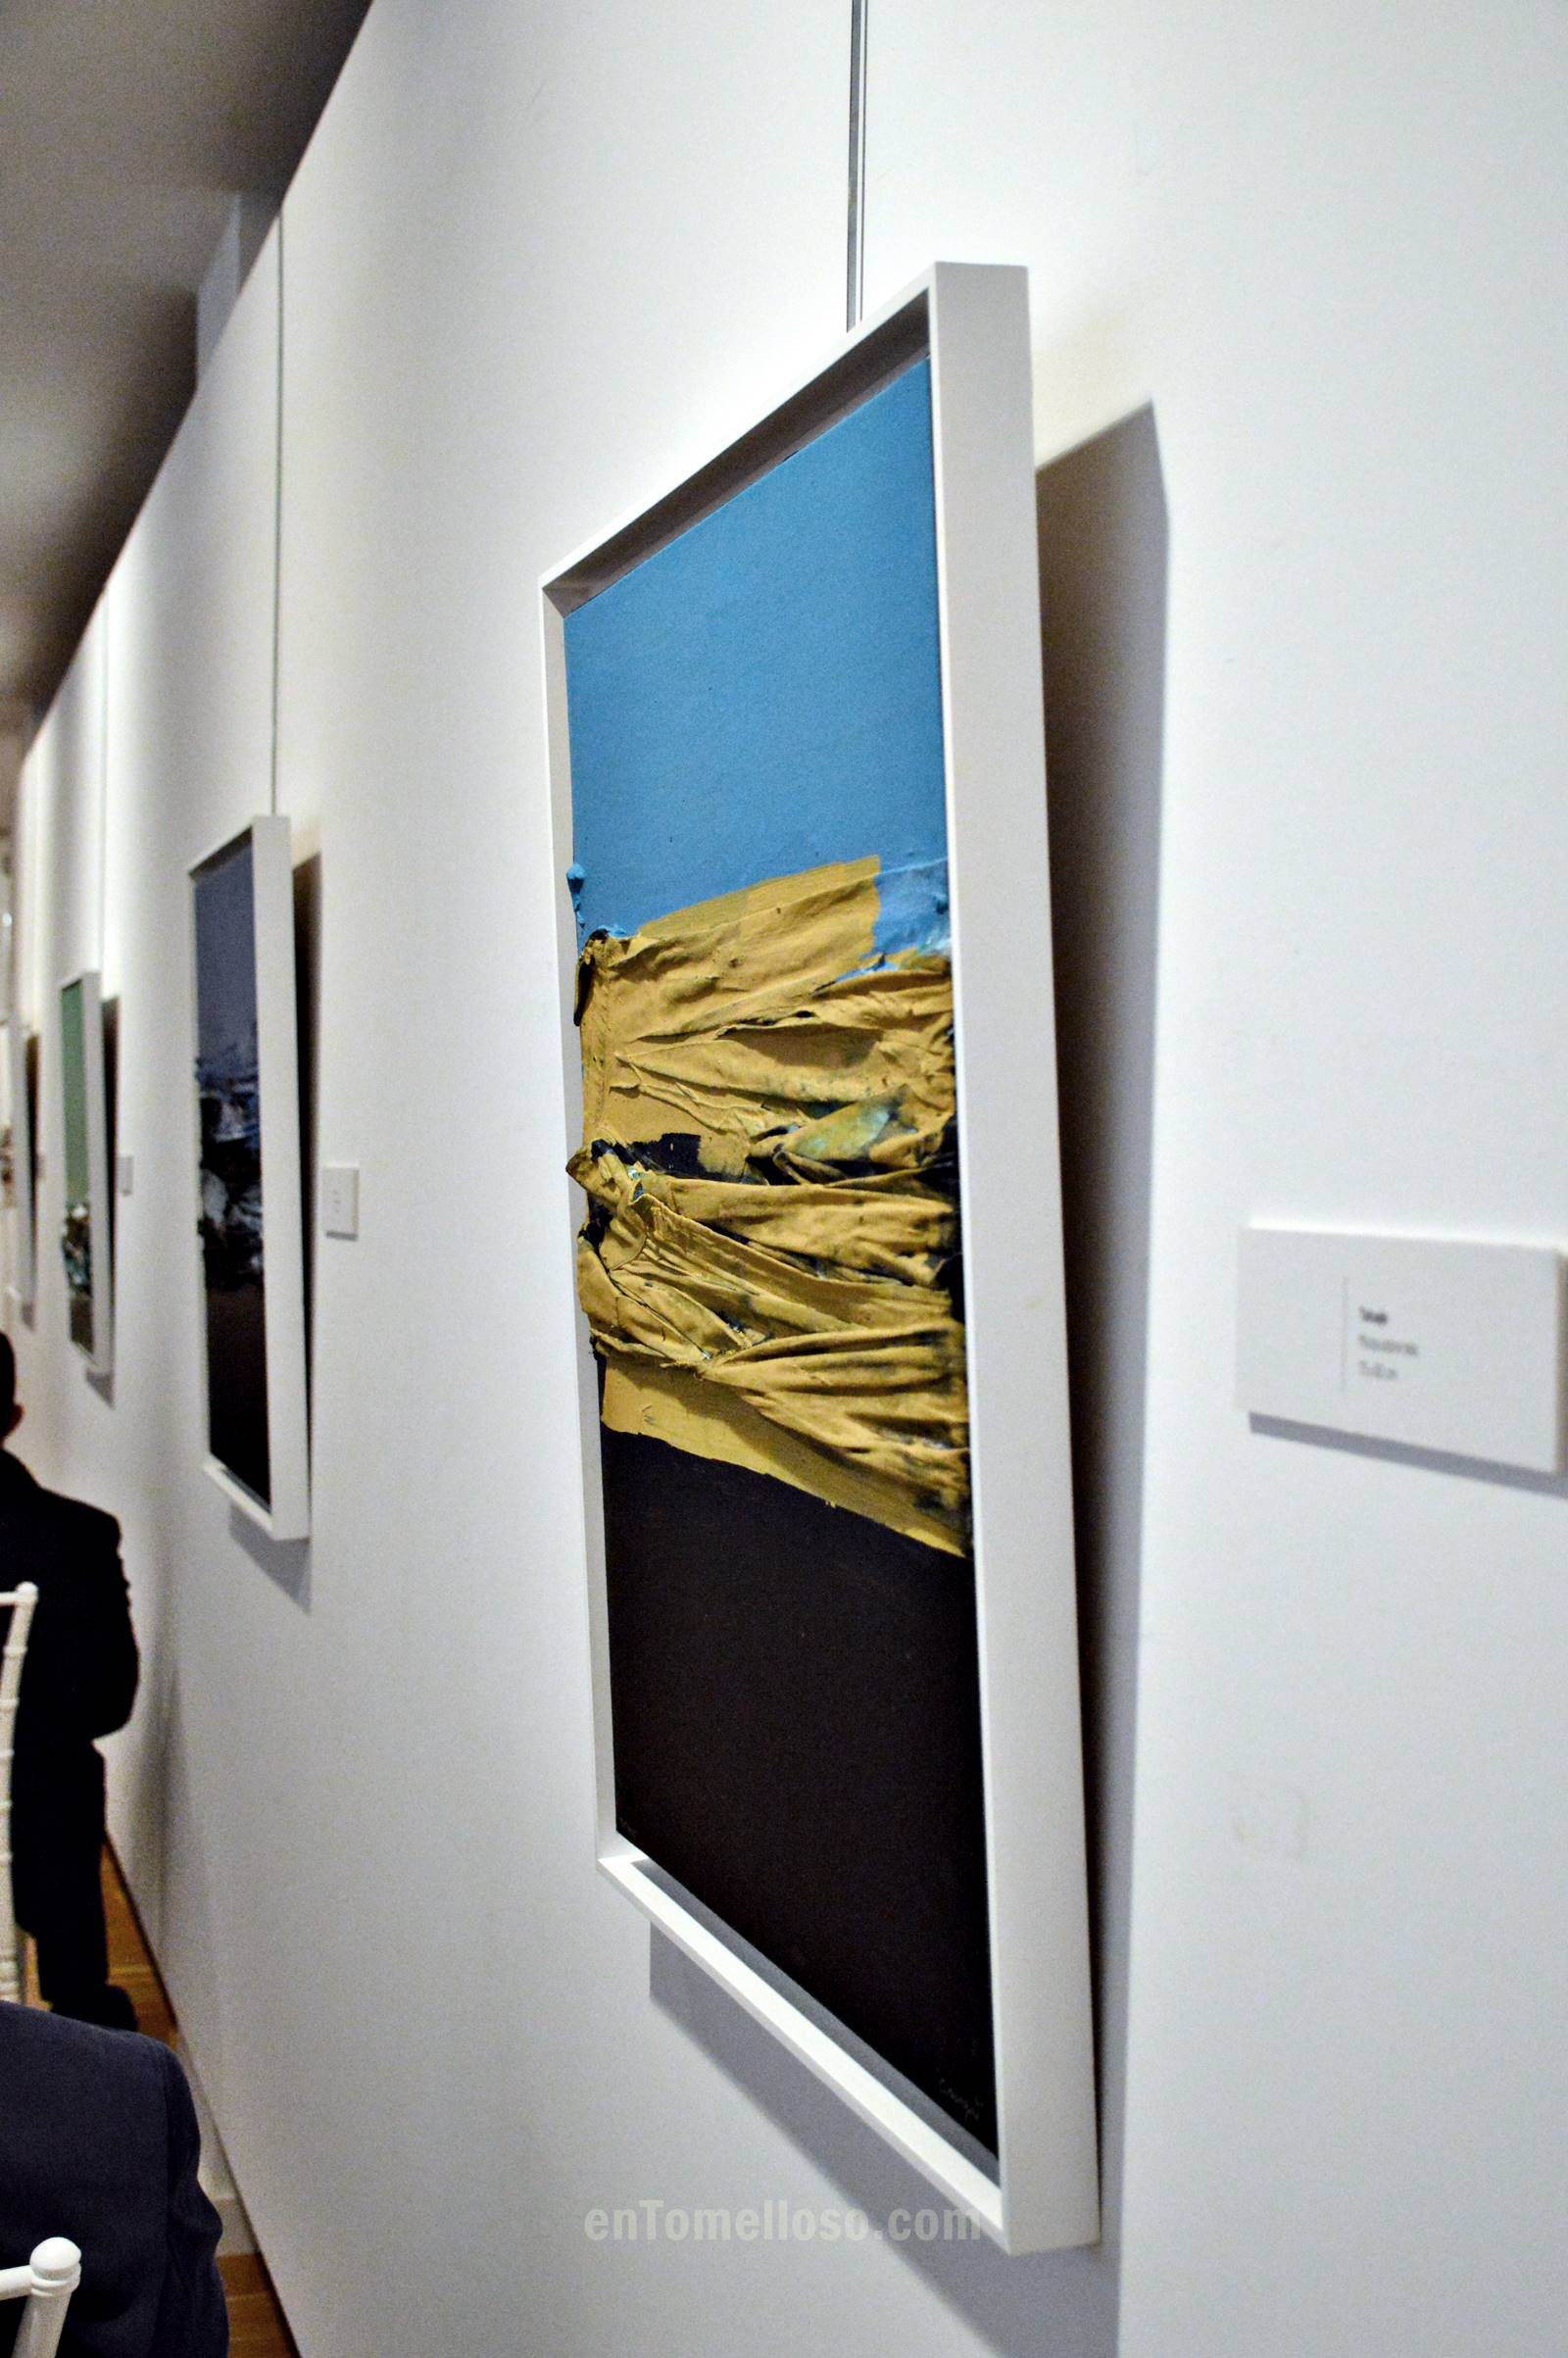 El Museo Infanta Elena de Tomelloso acoge la exposición "Renacido", del artista internacional Rafael Canogar